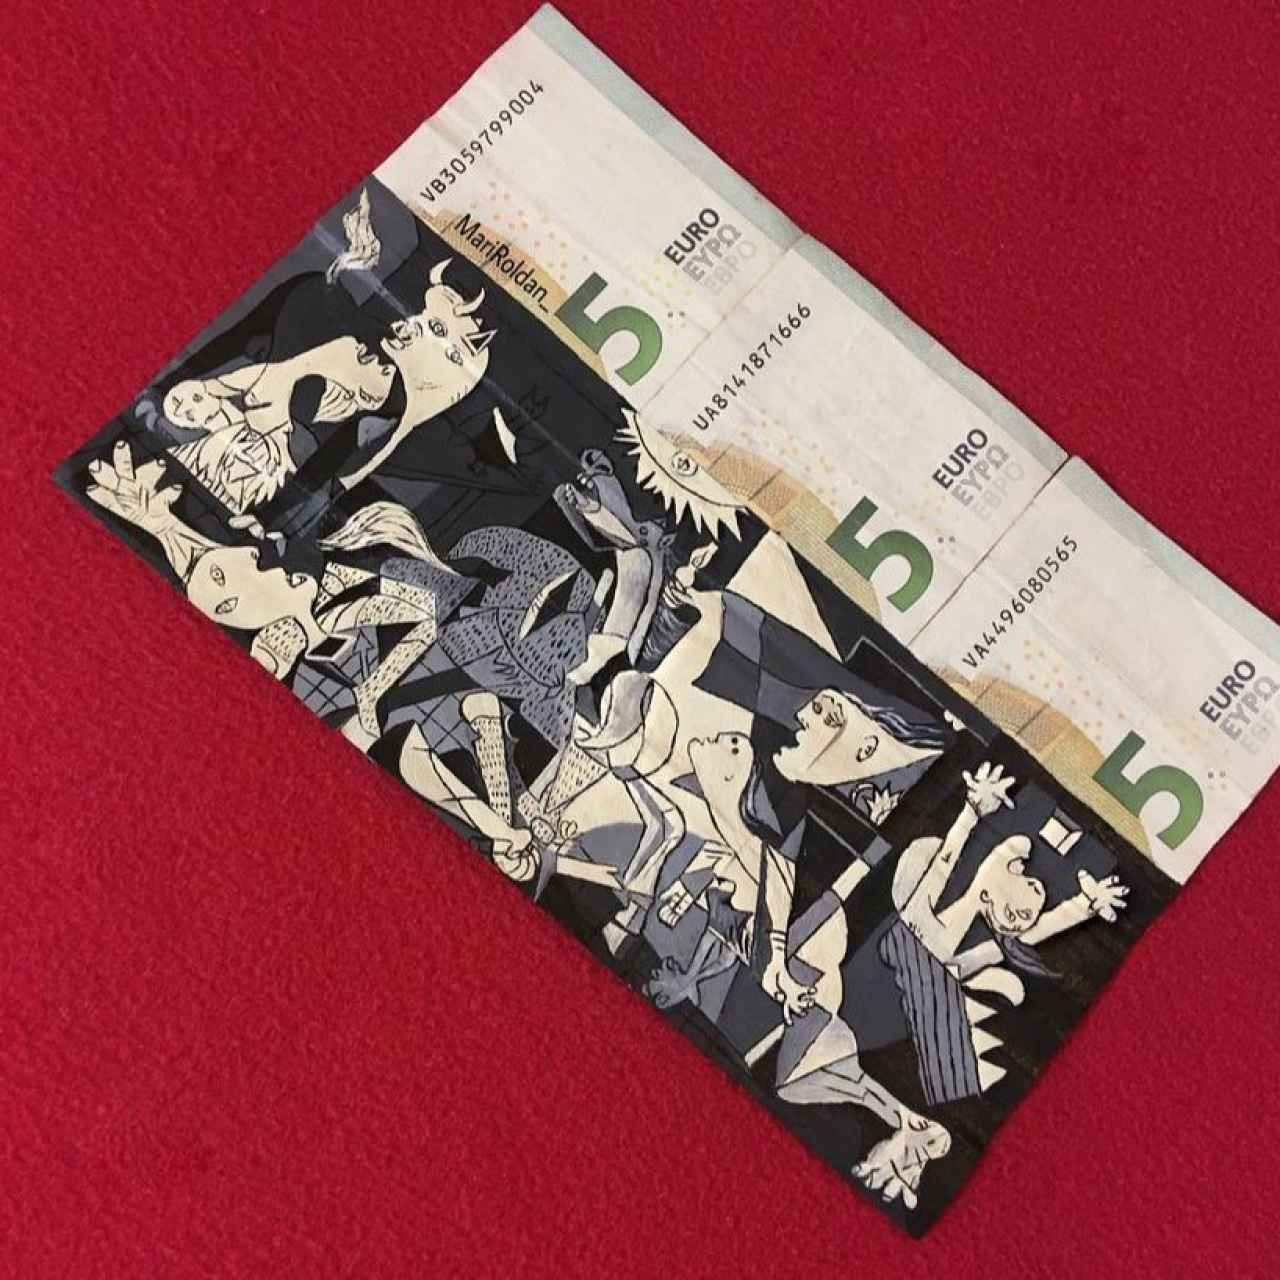 La adaptación del Guernica de Mari Roldán en tres billetes de cinco euros.